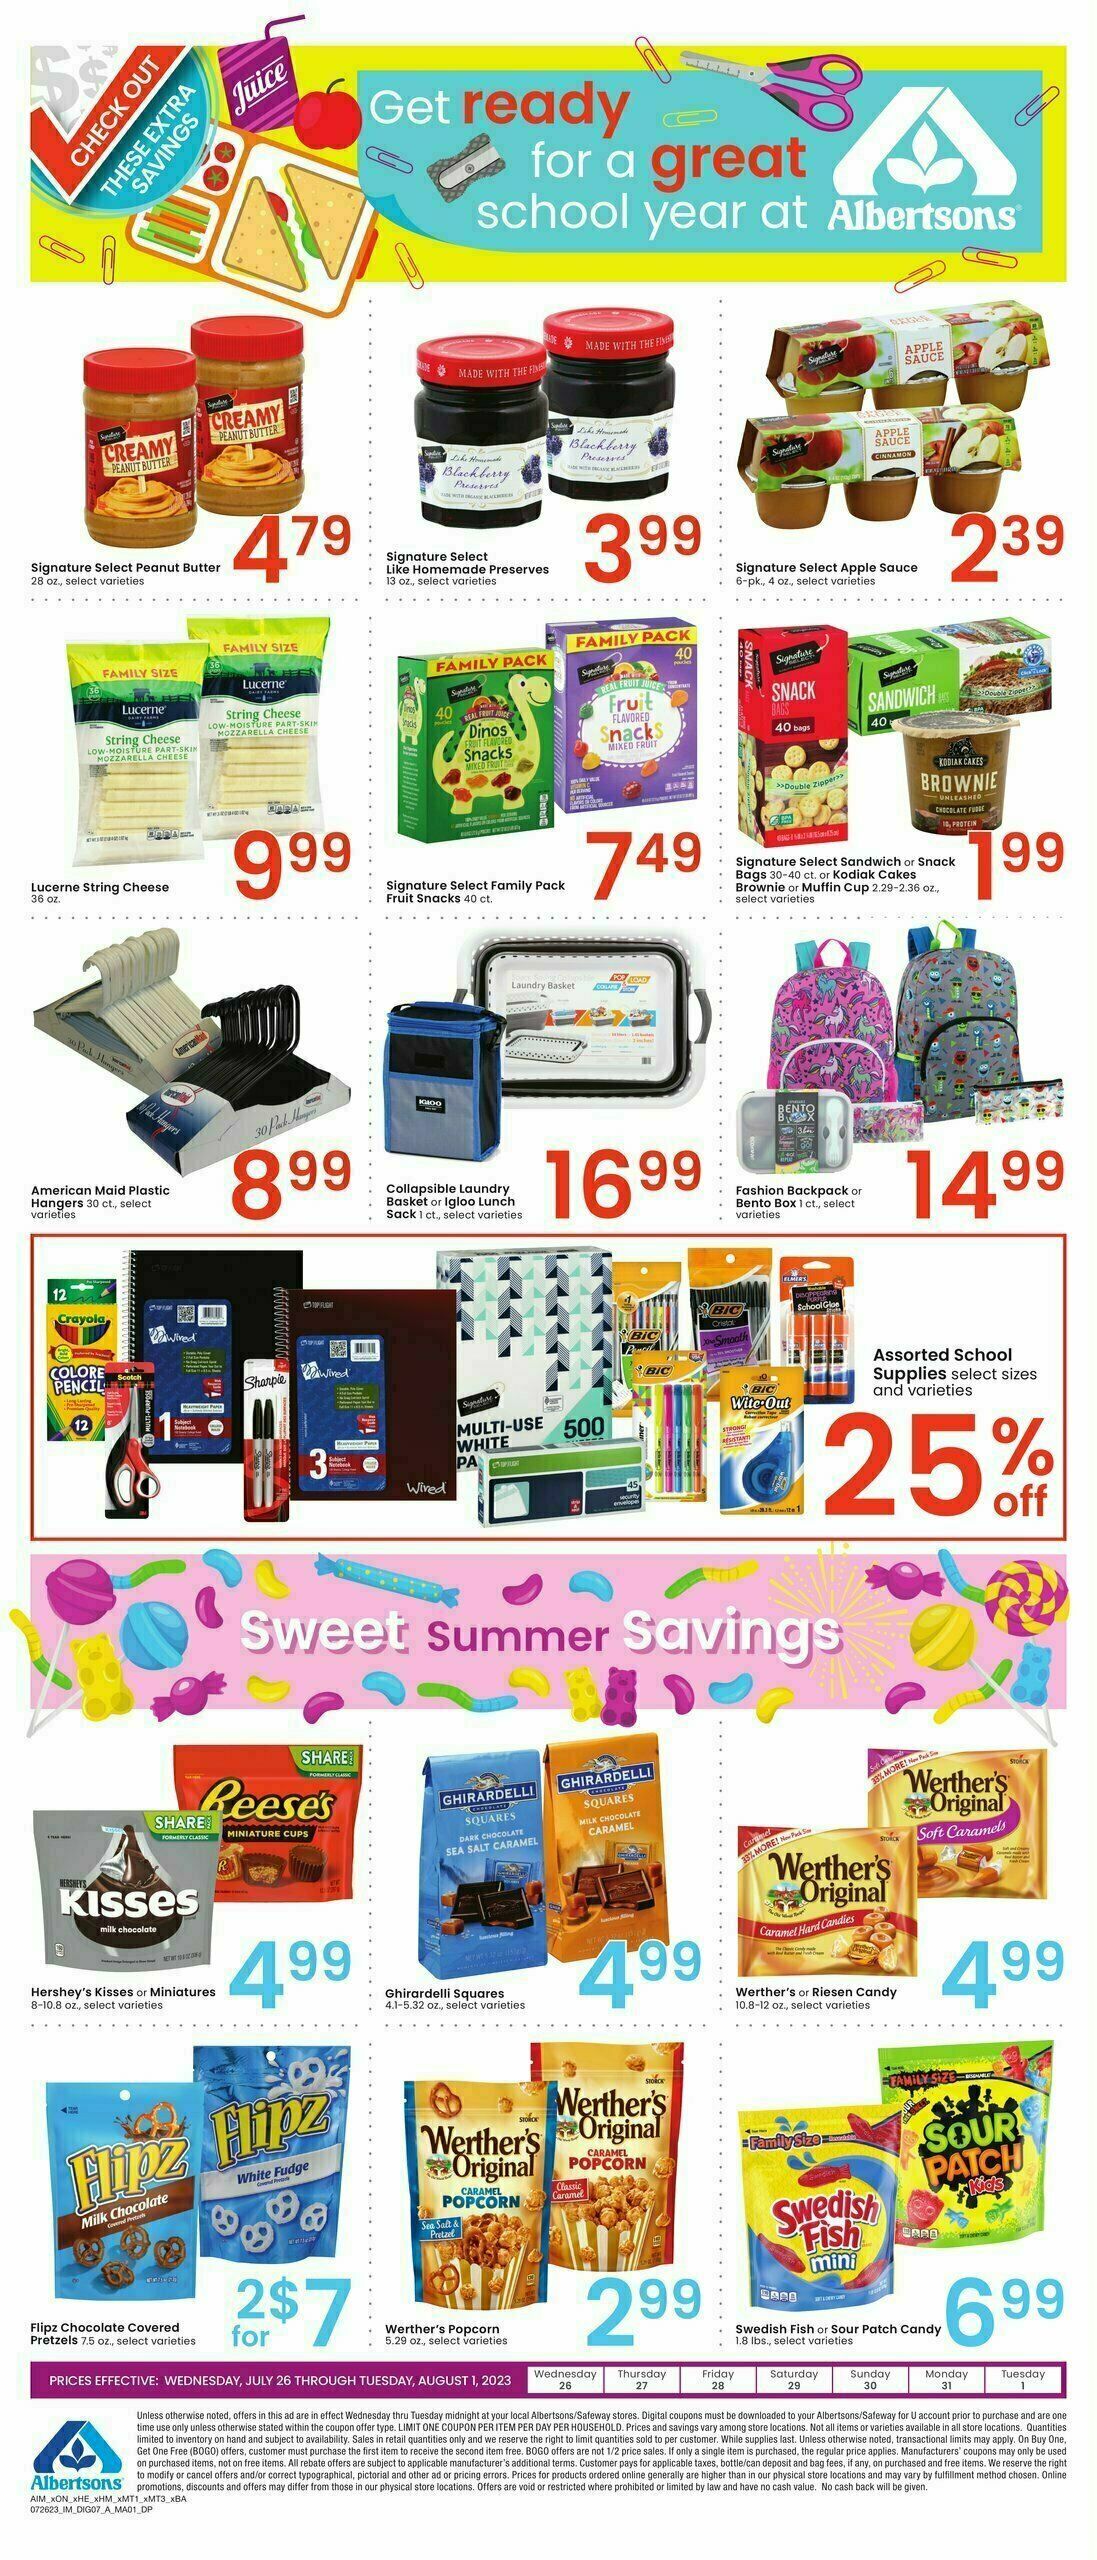 Albertsons Bonus Savings Weekly Ad from July 26